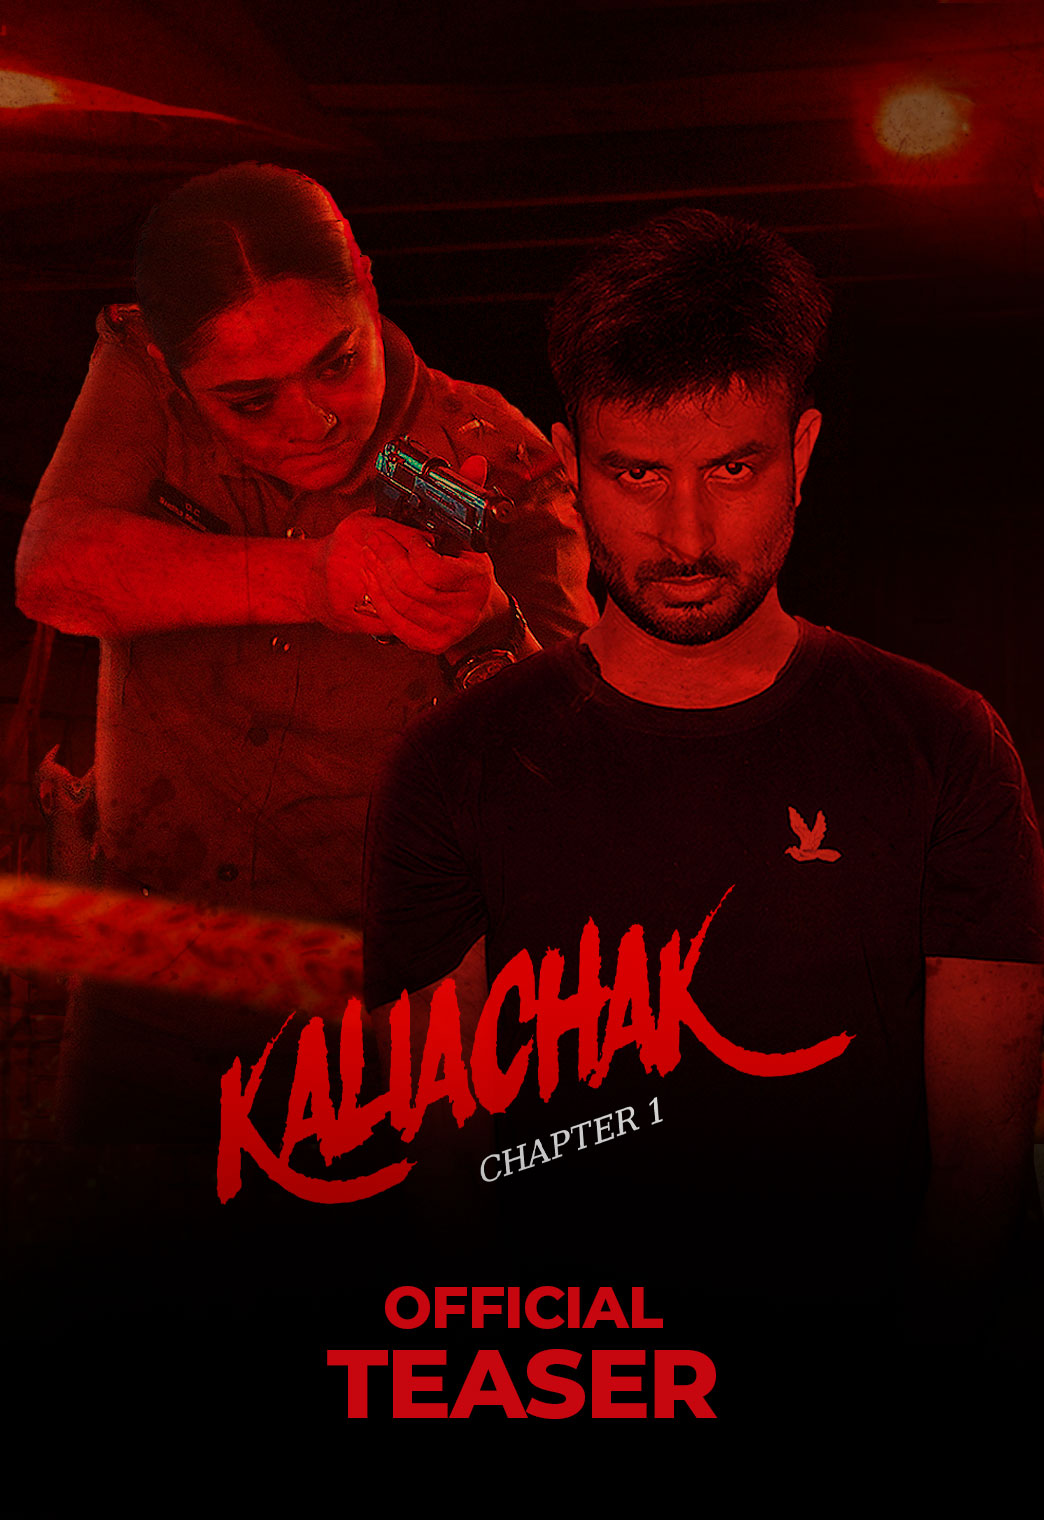 Kaliachak Official Teaser